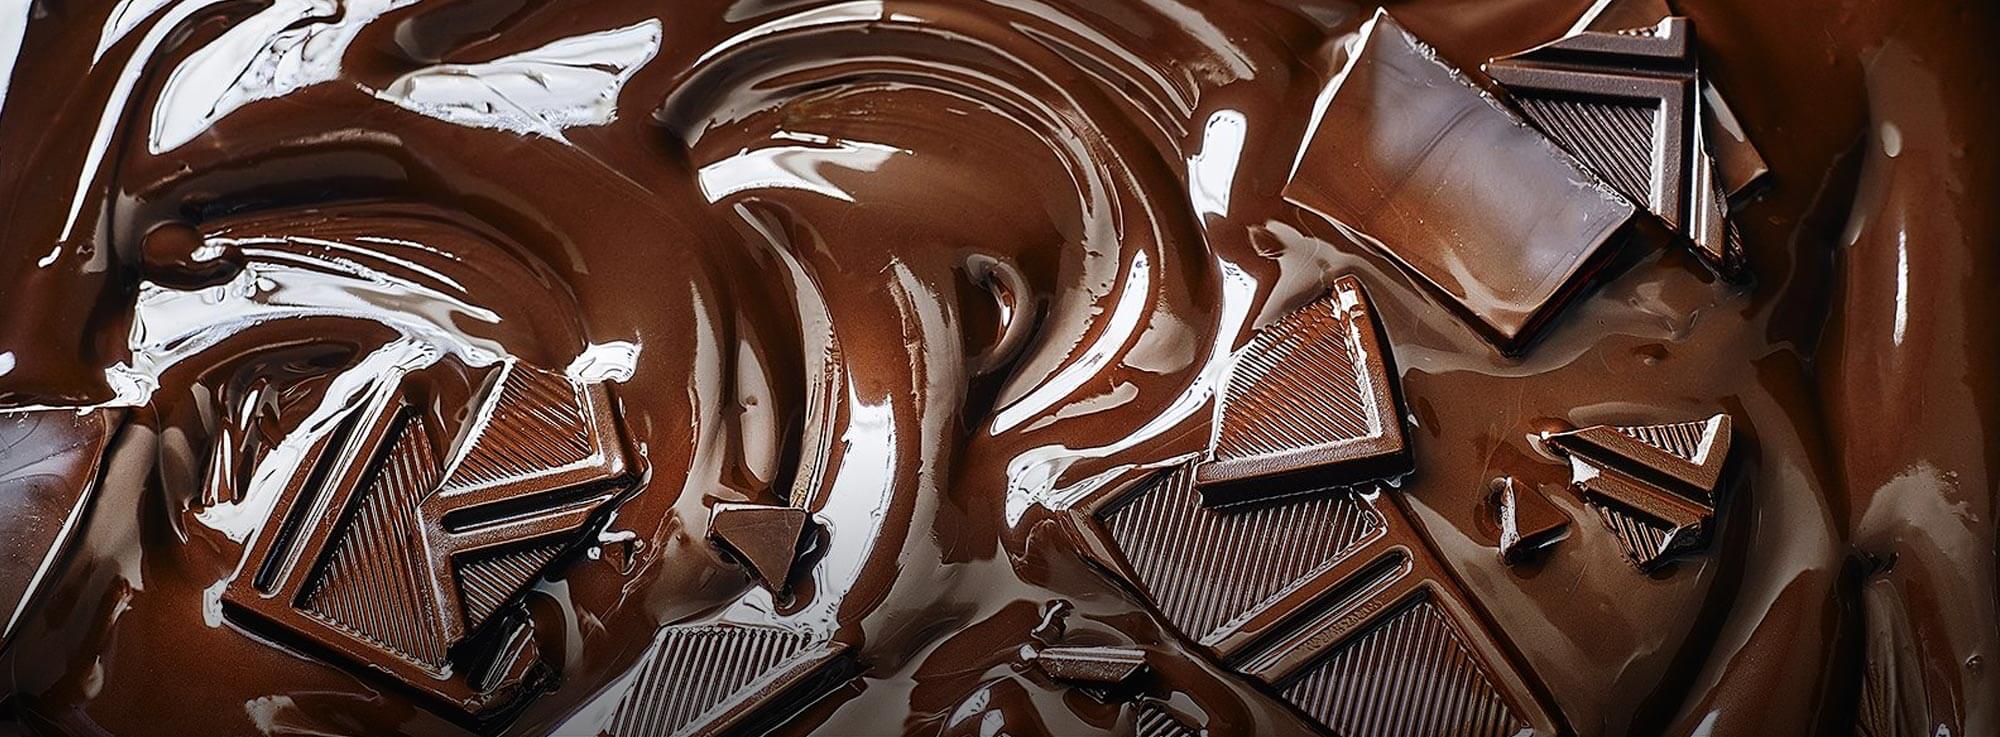 Brindisi: La magia del Cioccolato